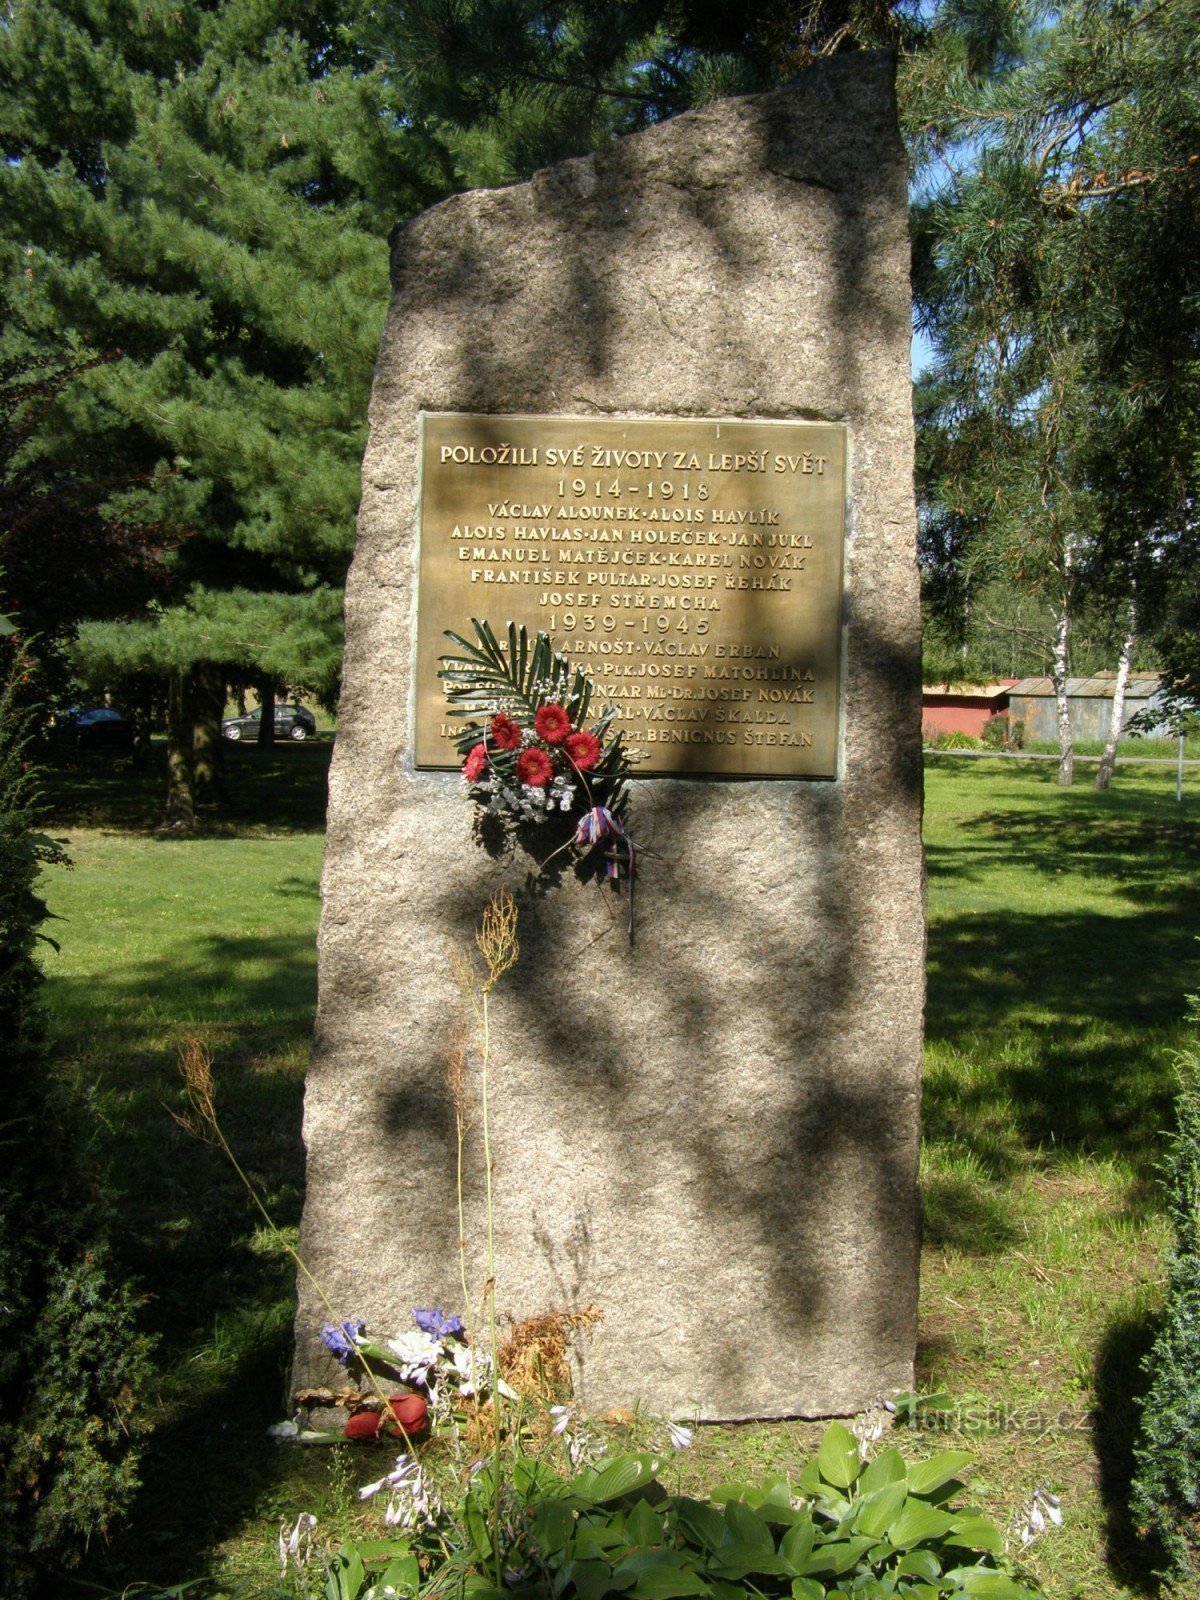 Градец Кралове - памятник жертвам войн в Силезском пригороде